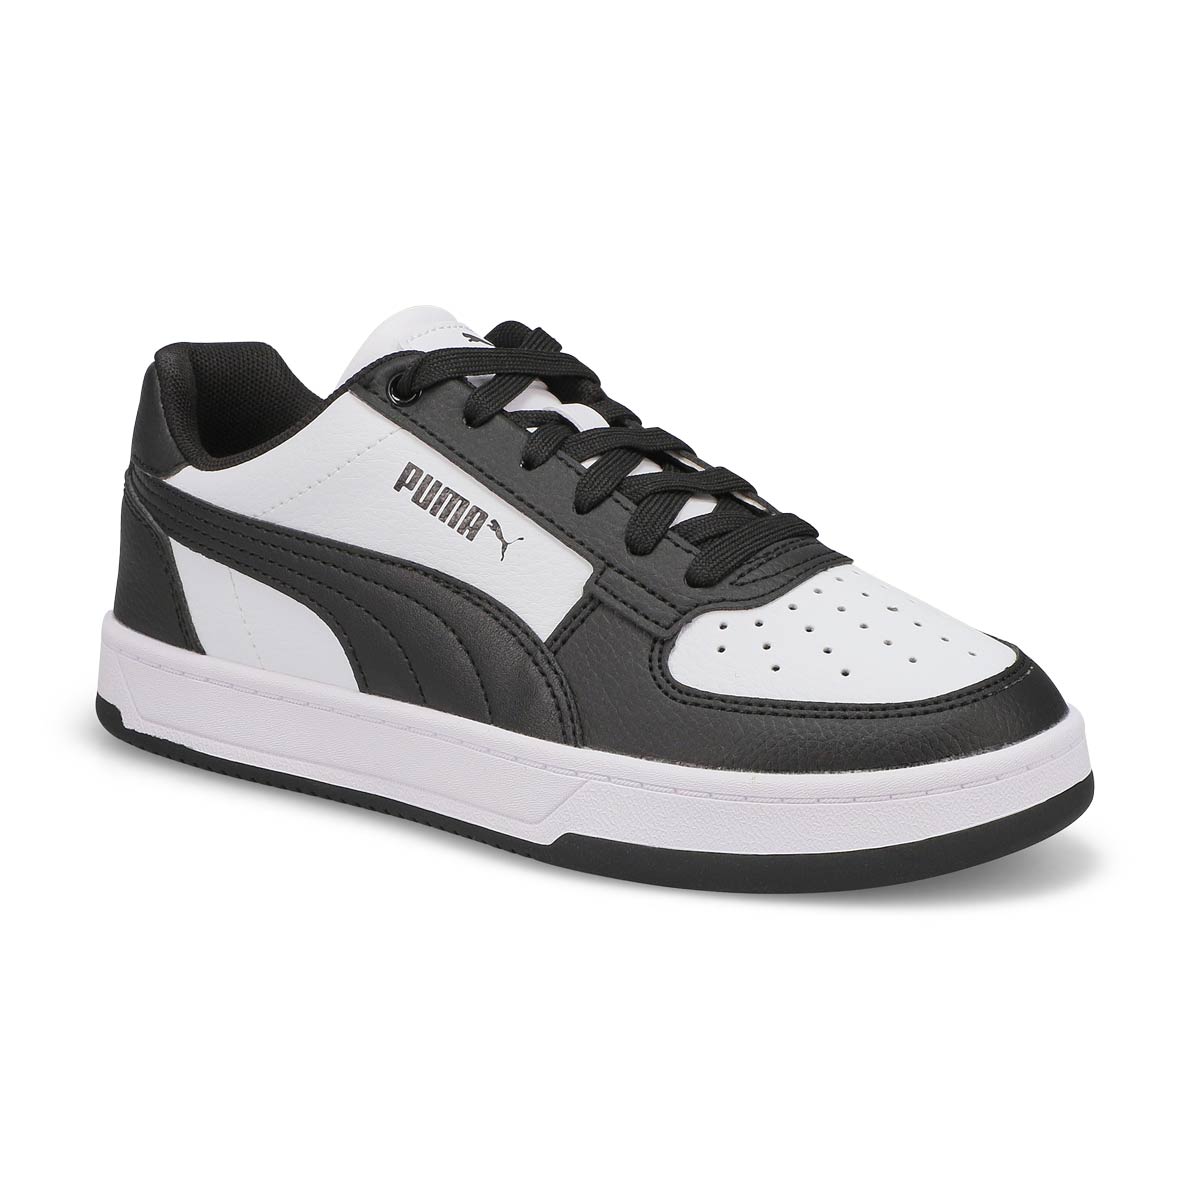 Kids Caven 2.0 Jr Lace Up Sneaker - Black/White